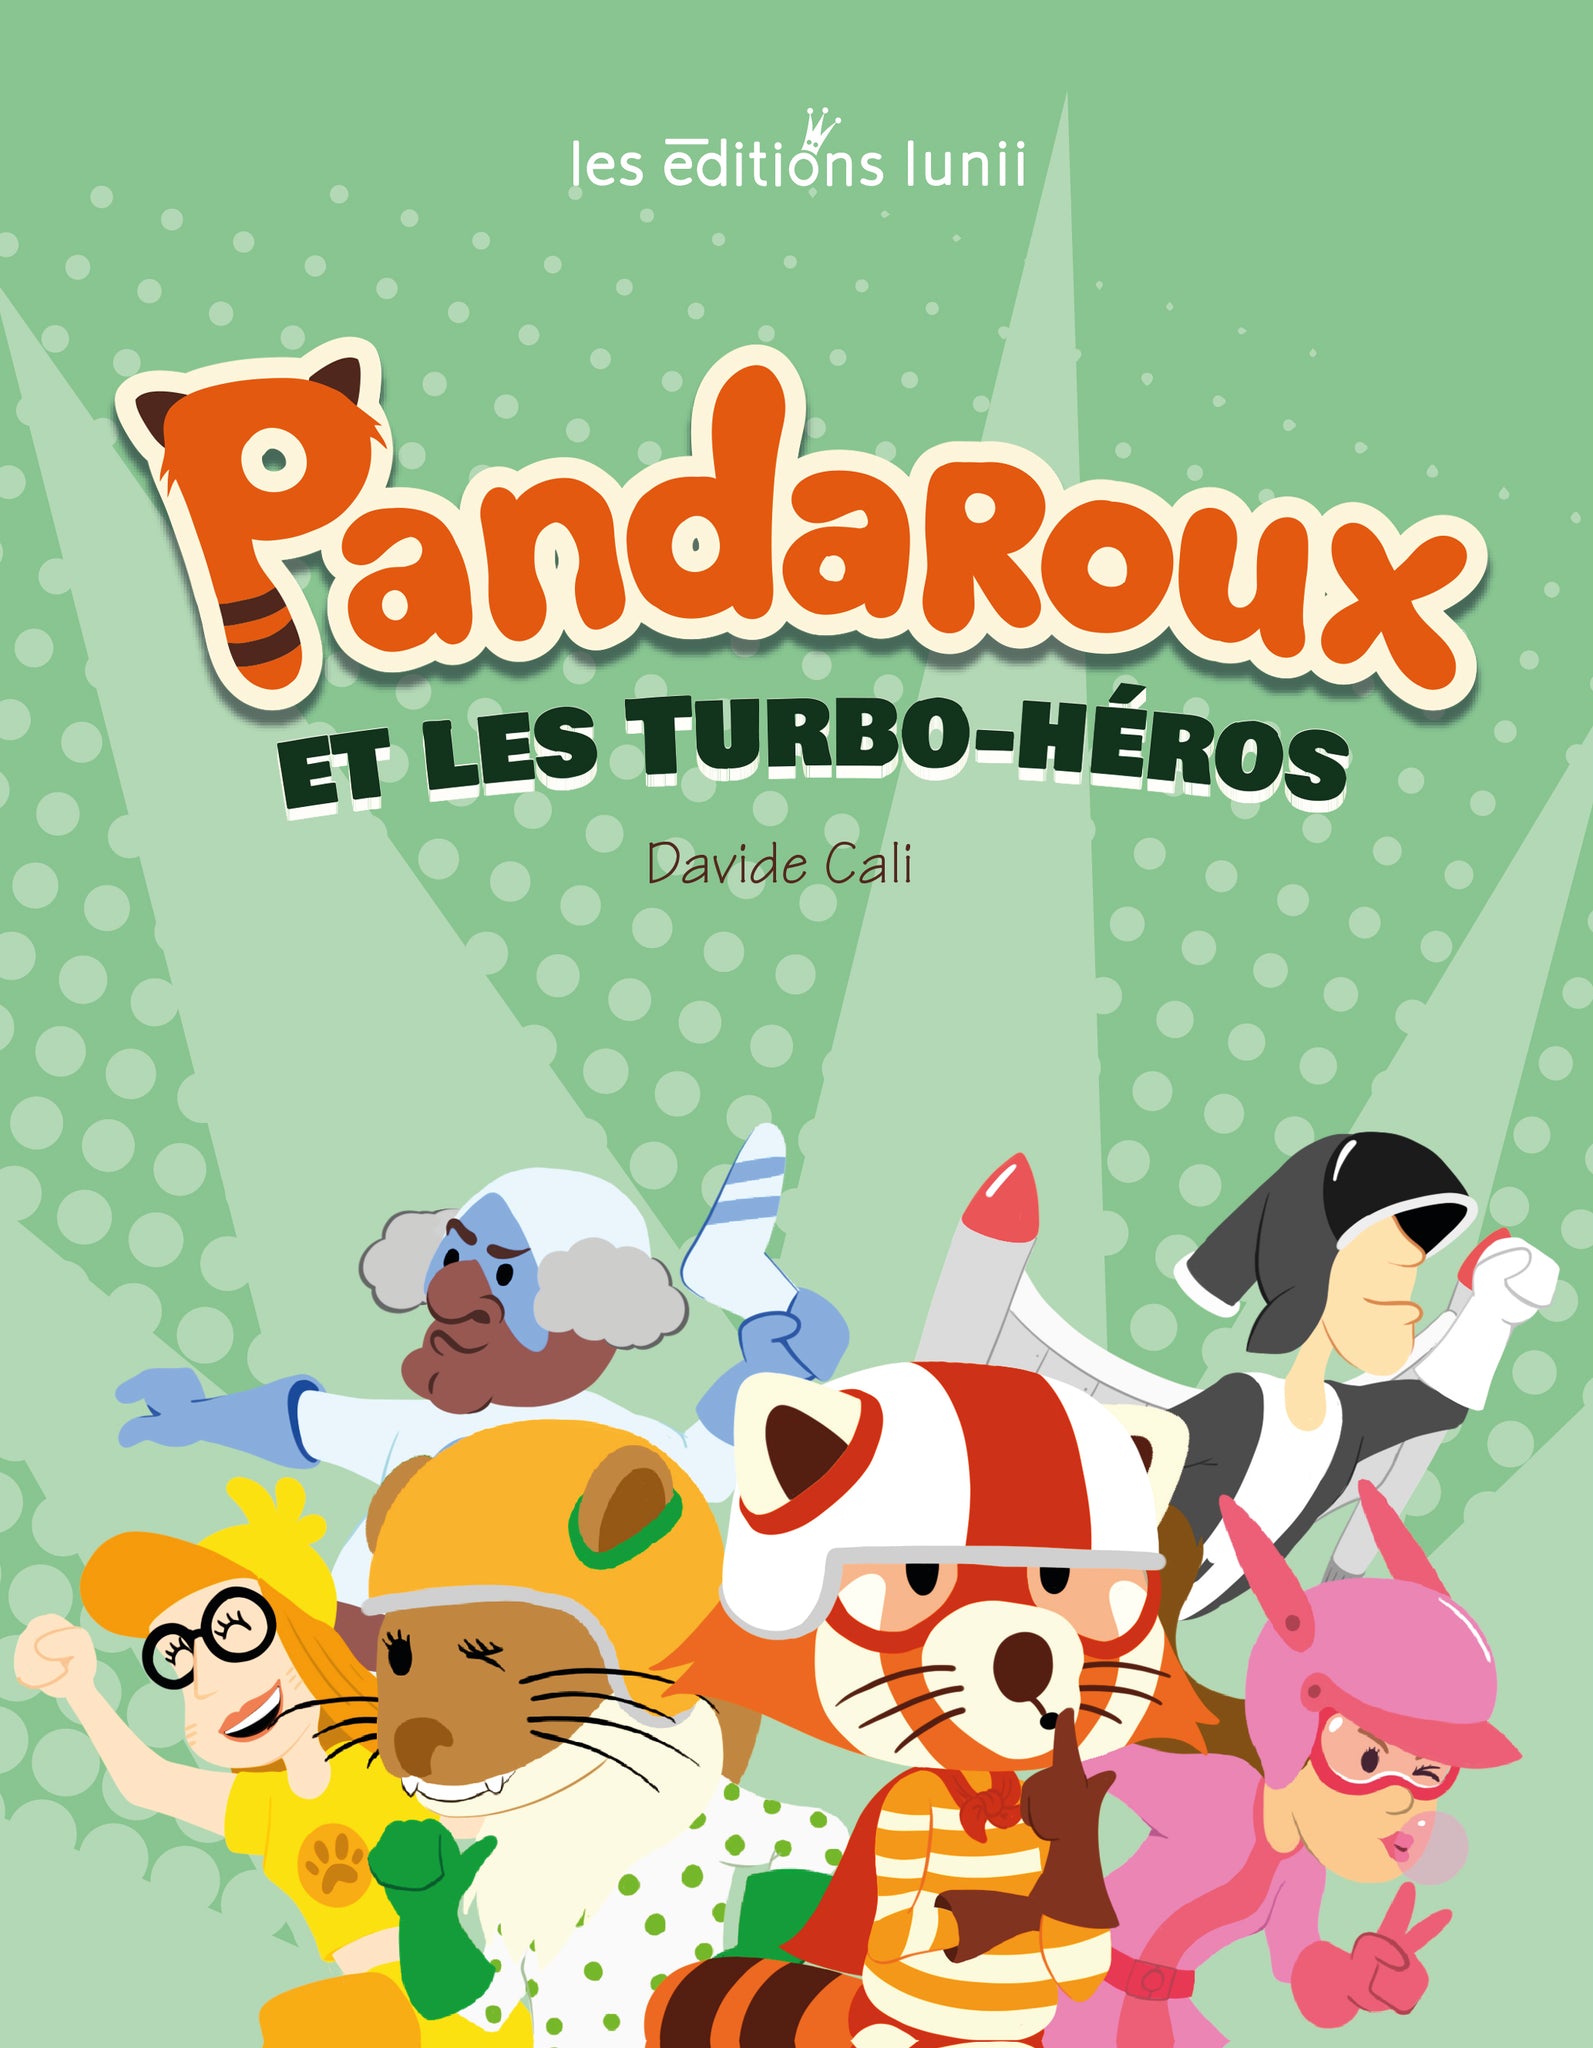 Pandaroux et les Turbo-Héros